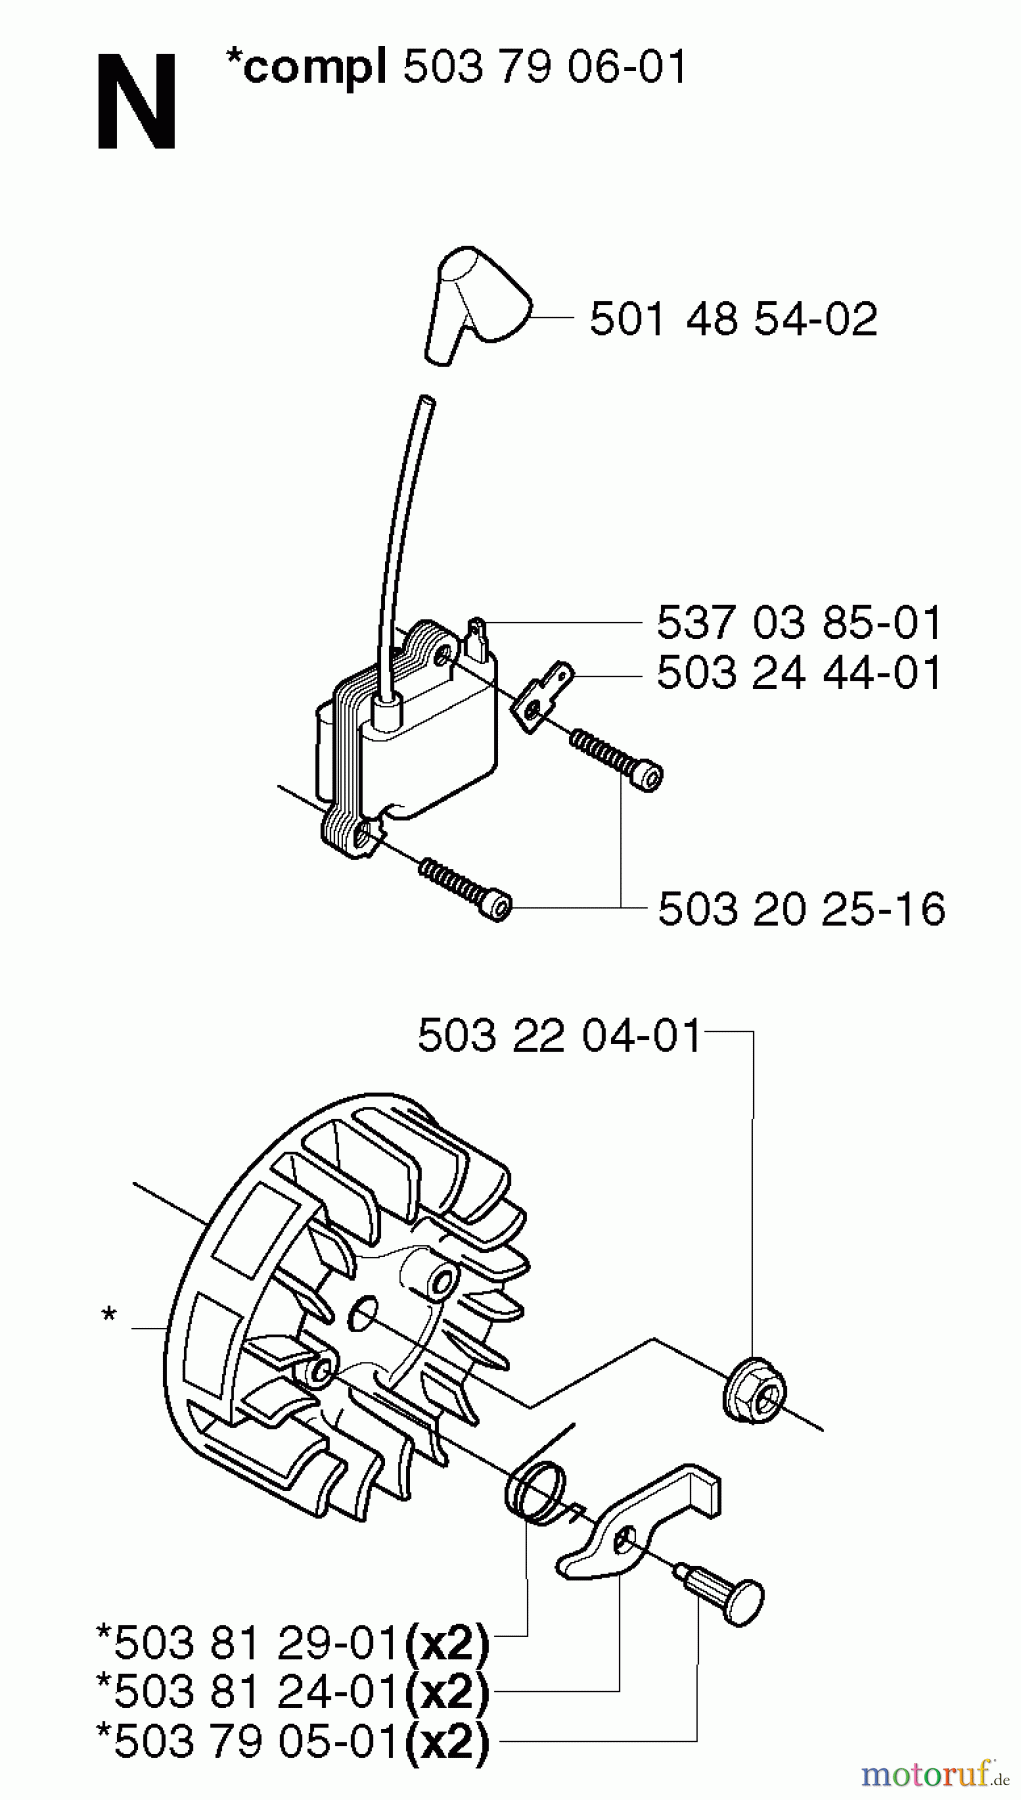  Jonsered Motorsensen, Trimmer GR2032 - Jonsered String/Brush Trimmer (2002-08) IGNITION SYSTEM